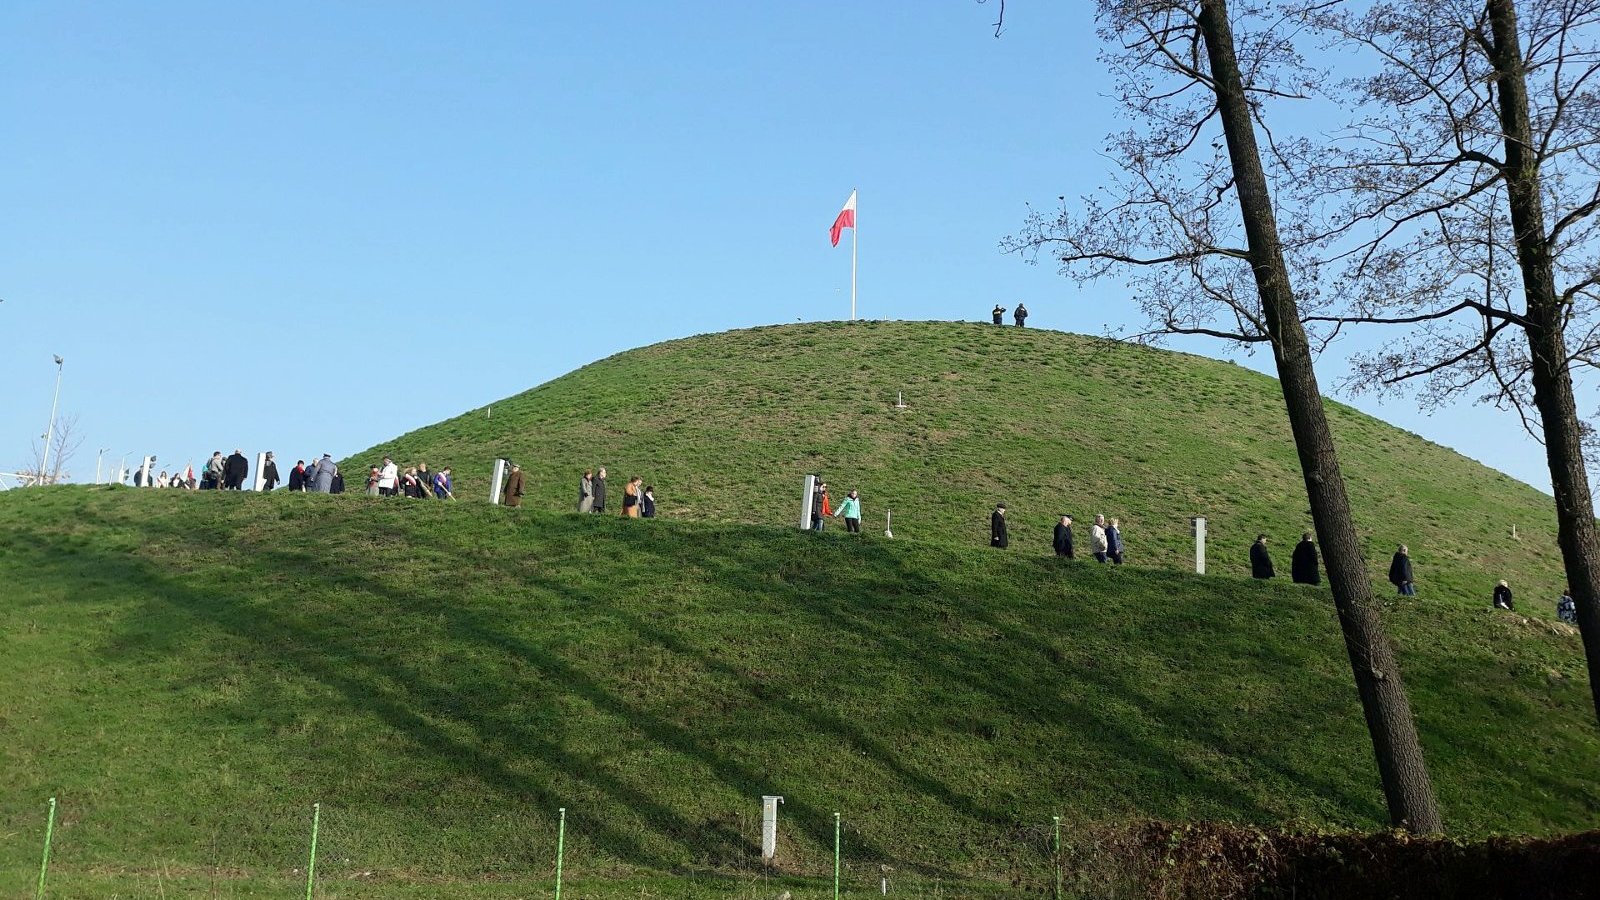 Popołudnie. Na szczycie Kopca stoi wysoki maszt z flagą Polski. Wokół Kopca chodzą ludzie, którzy wchodzą na szczyt lub schodzą na dół. W tle bezchmurne niebo. W kadrze po prawej są dwa drzewa.